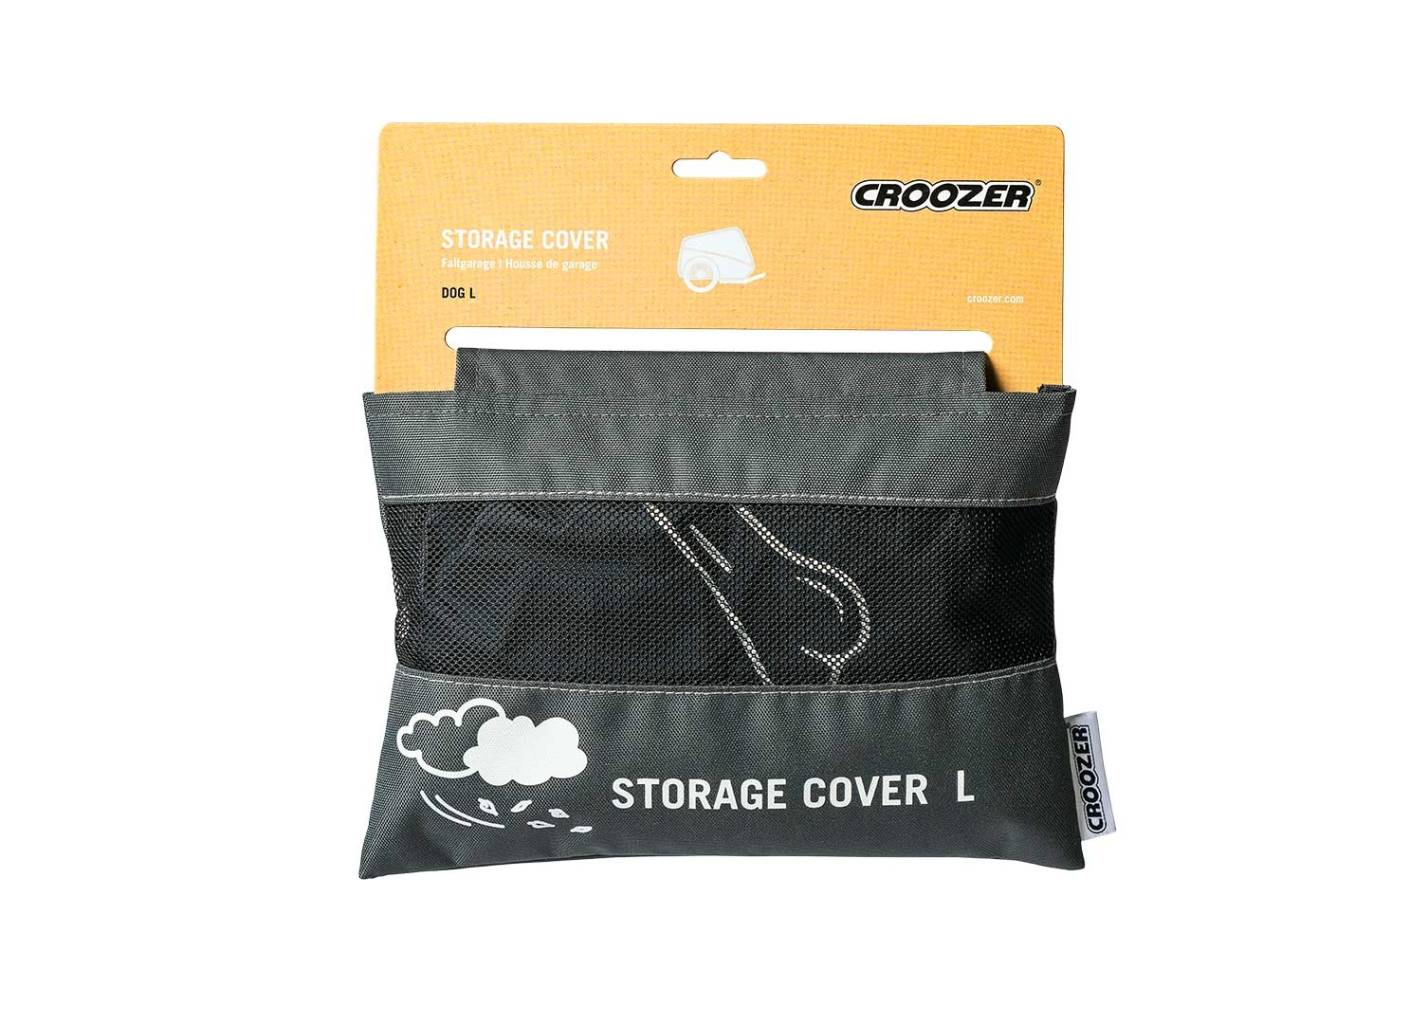 Croozer Faltgarage / Storage Cover